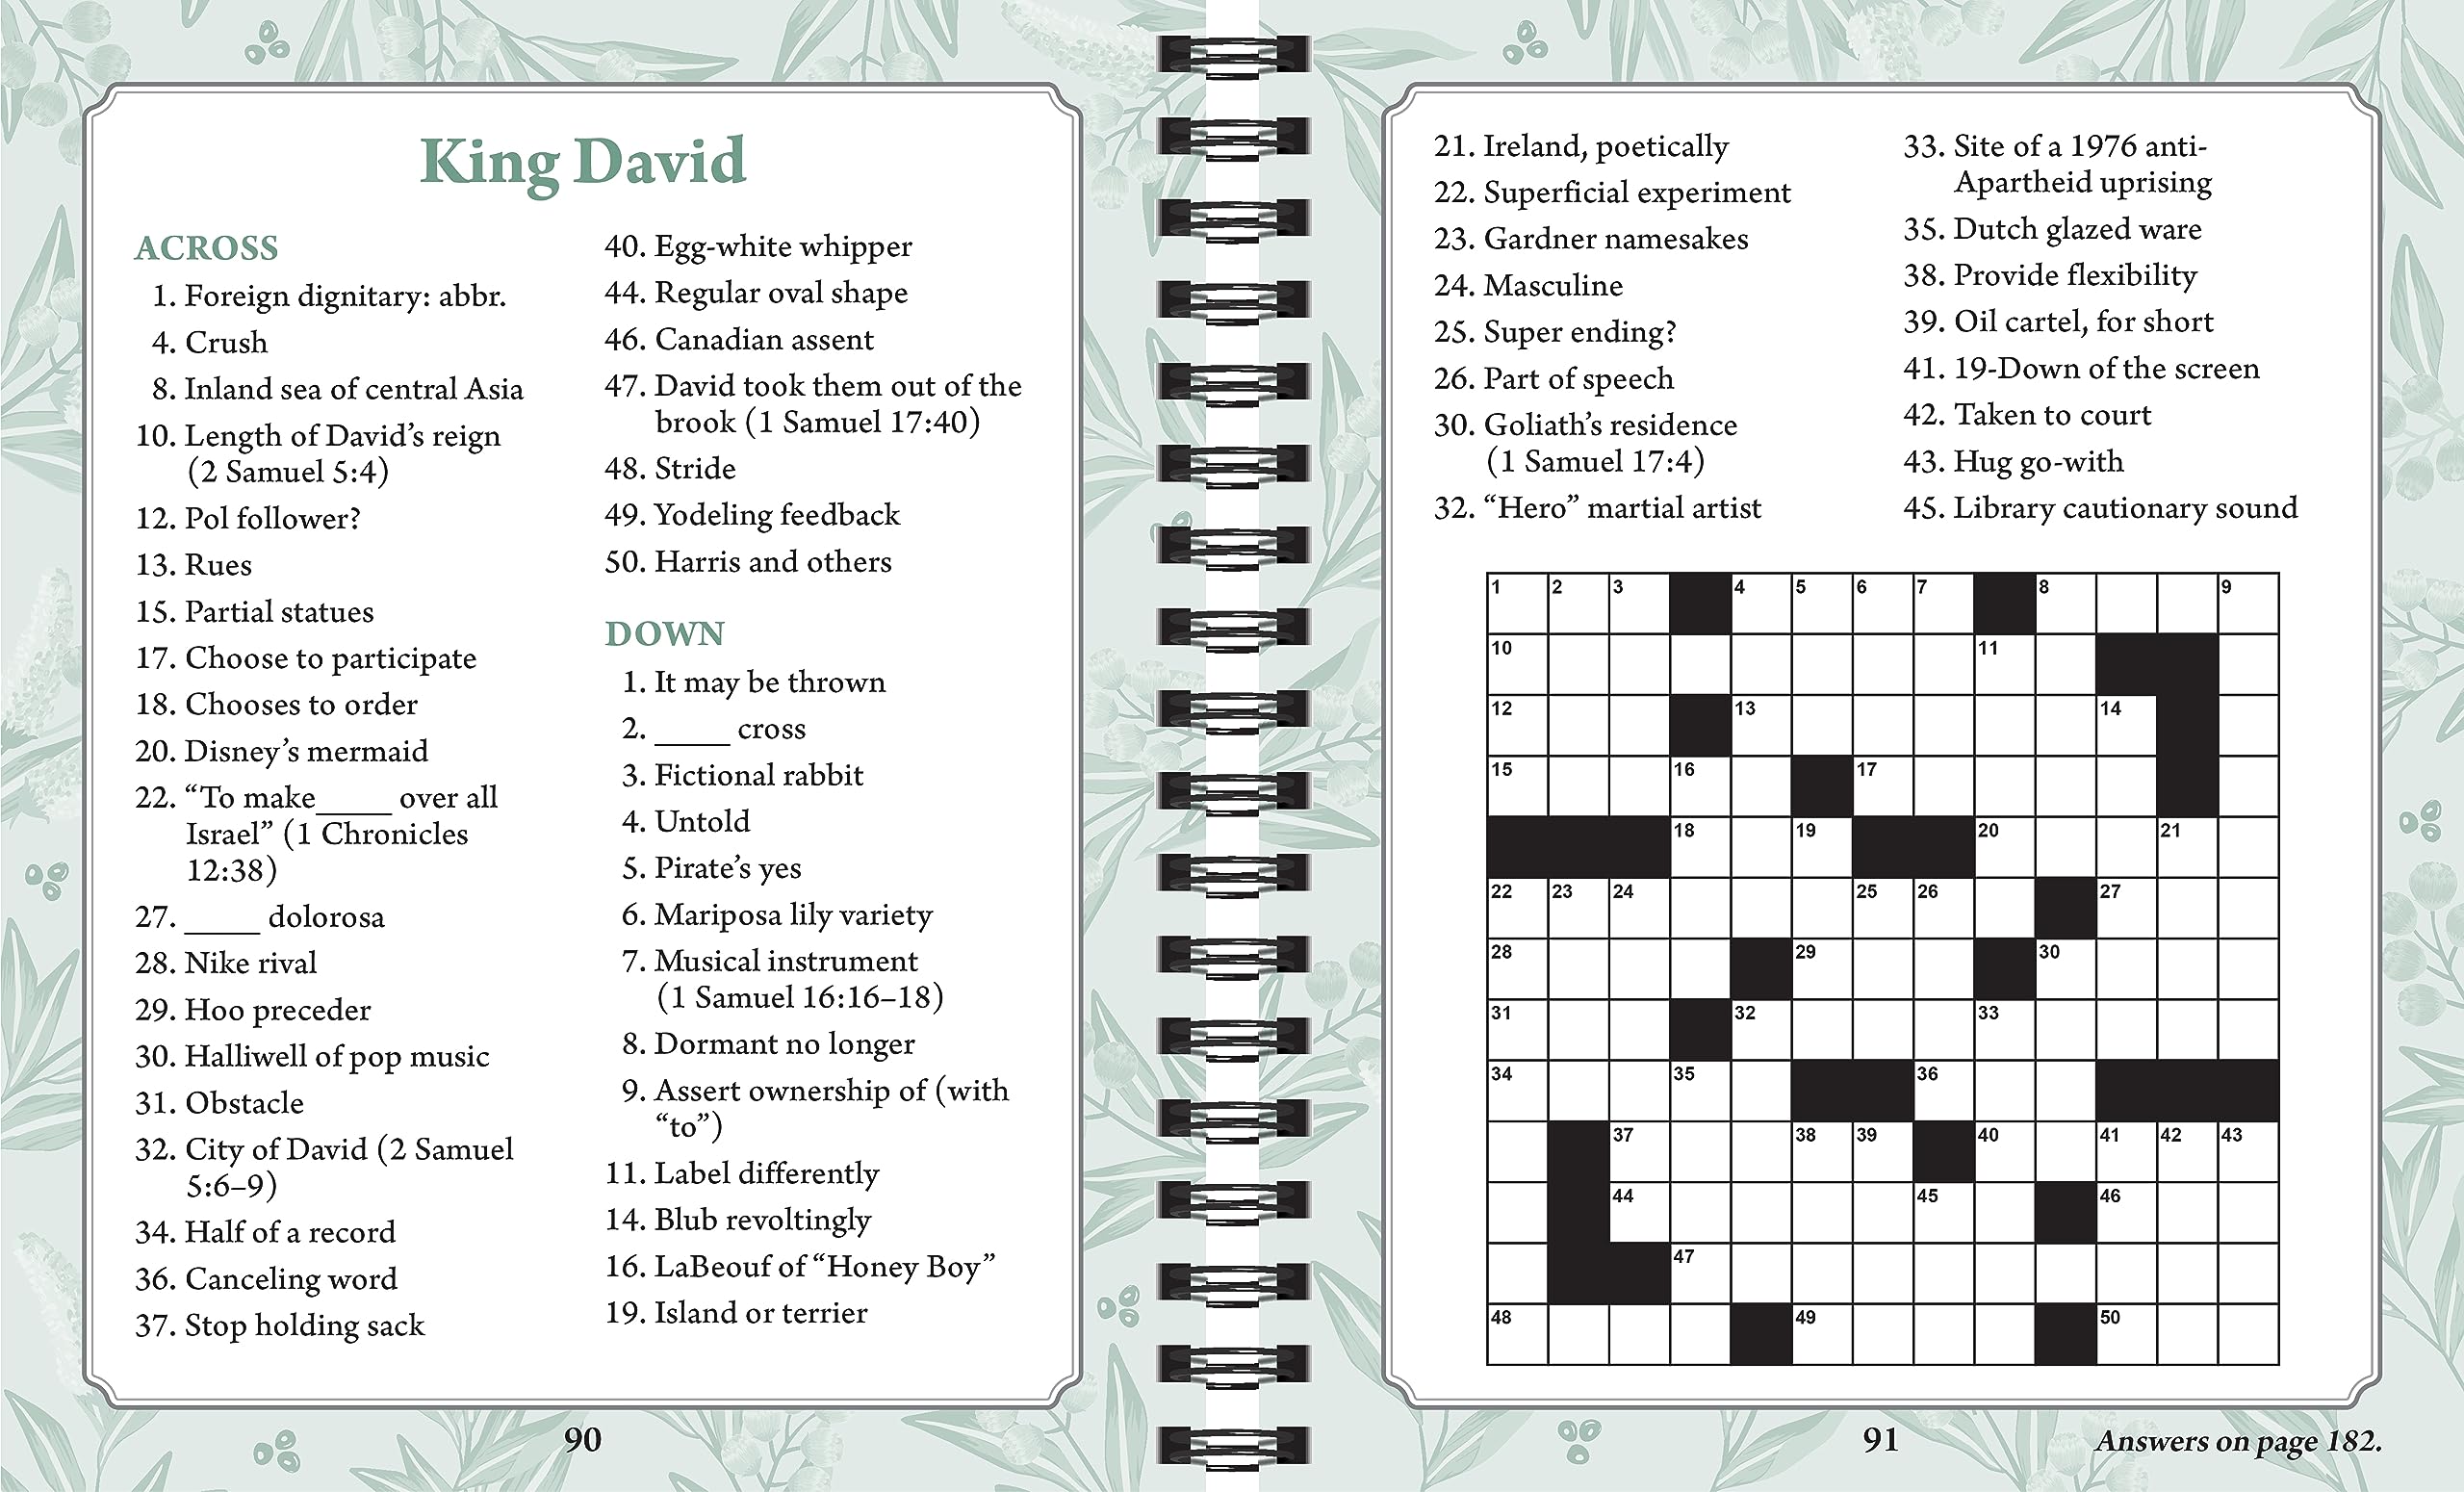 Brain Games - Bible Crossword Puzzles: Prayers, Parables & Prophets - Large Print